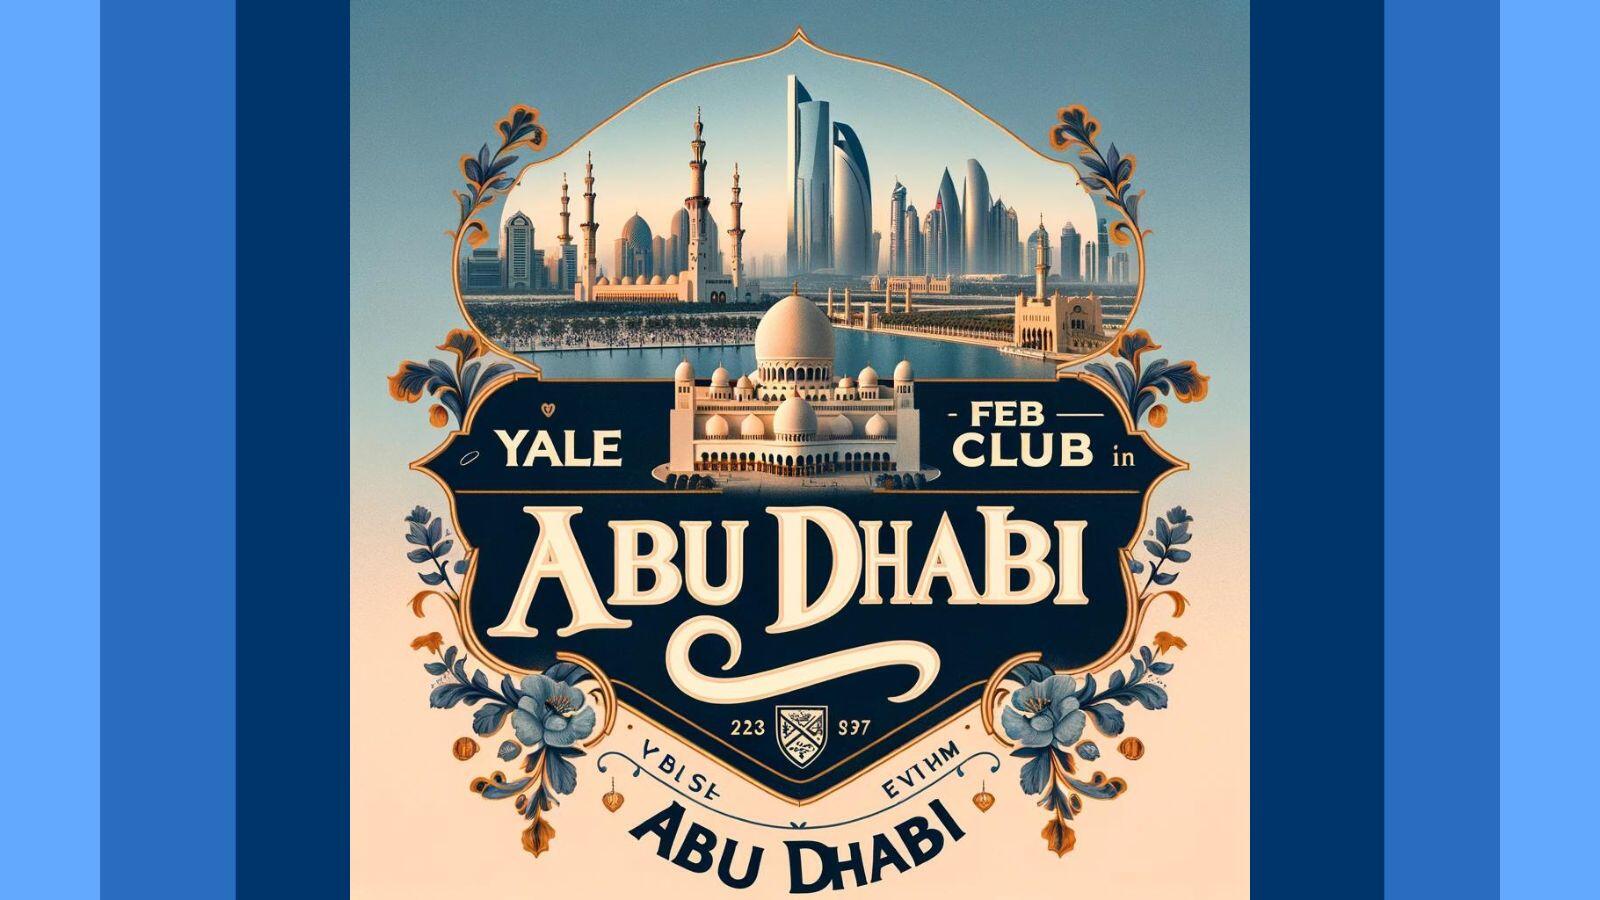 Feb Club Abu Dhabi, UAE